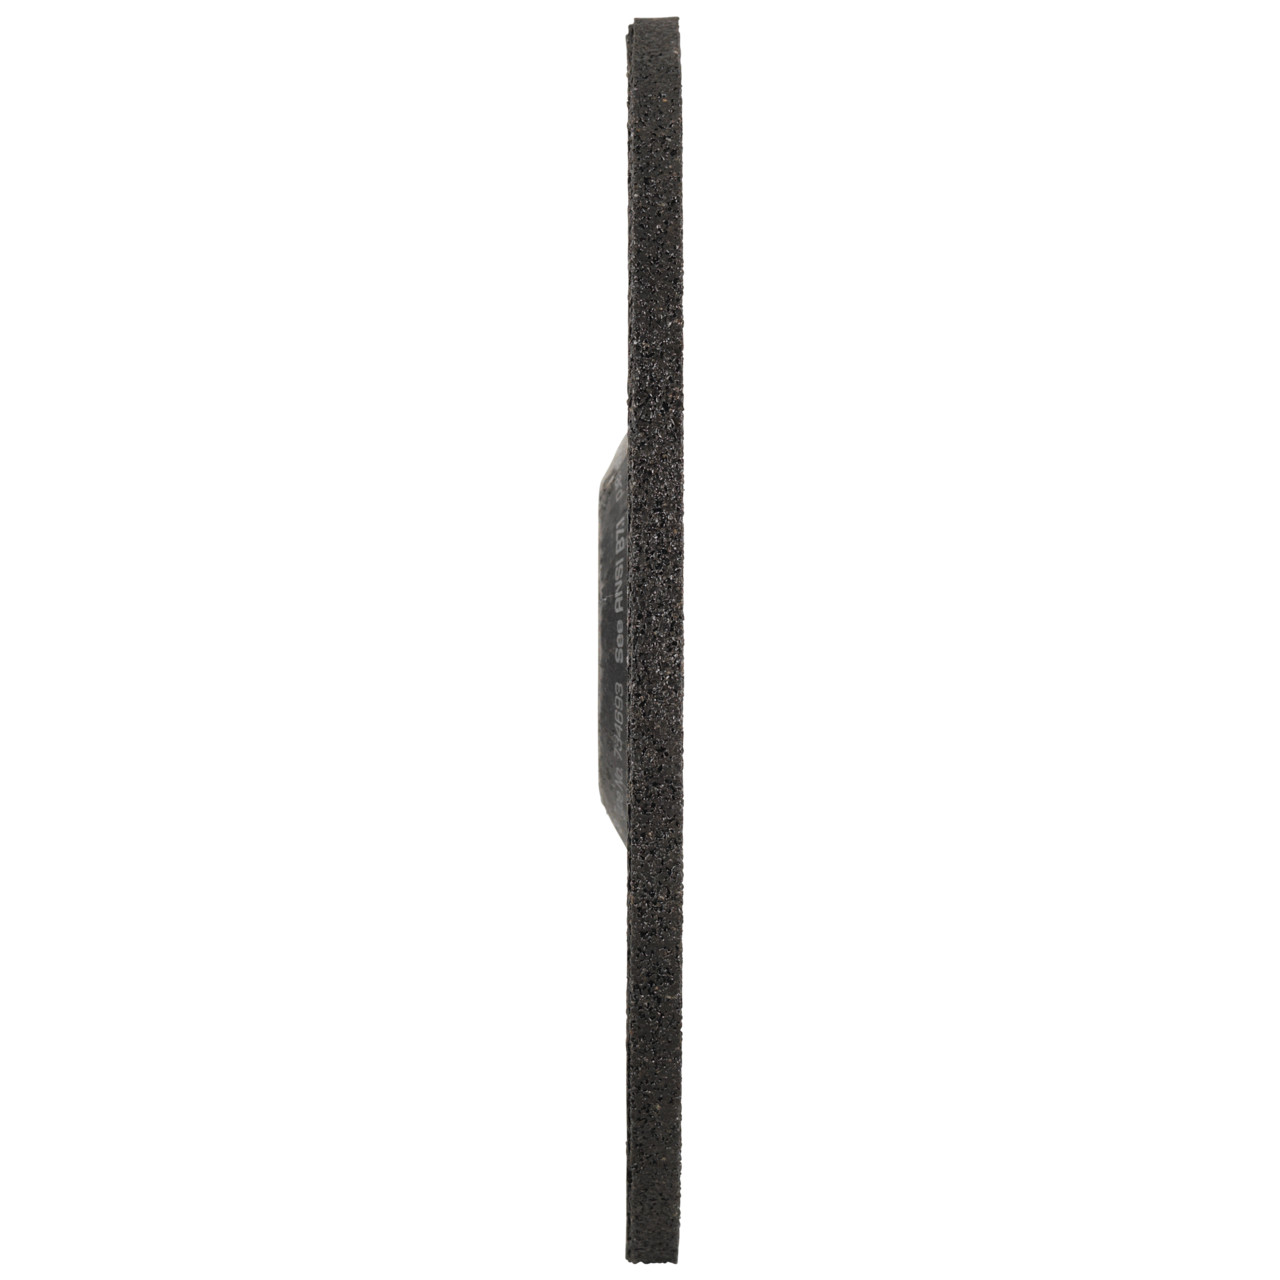 TYROLIT Schruppscheibe DxUxH 100x6x16 FASTCUT Basic für Stahl und Edelstahl, Form: 27C - gekröpfte Ausführung, Art. 34468715